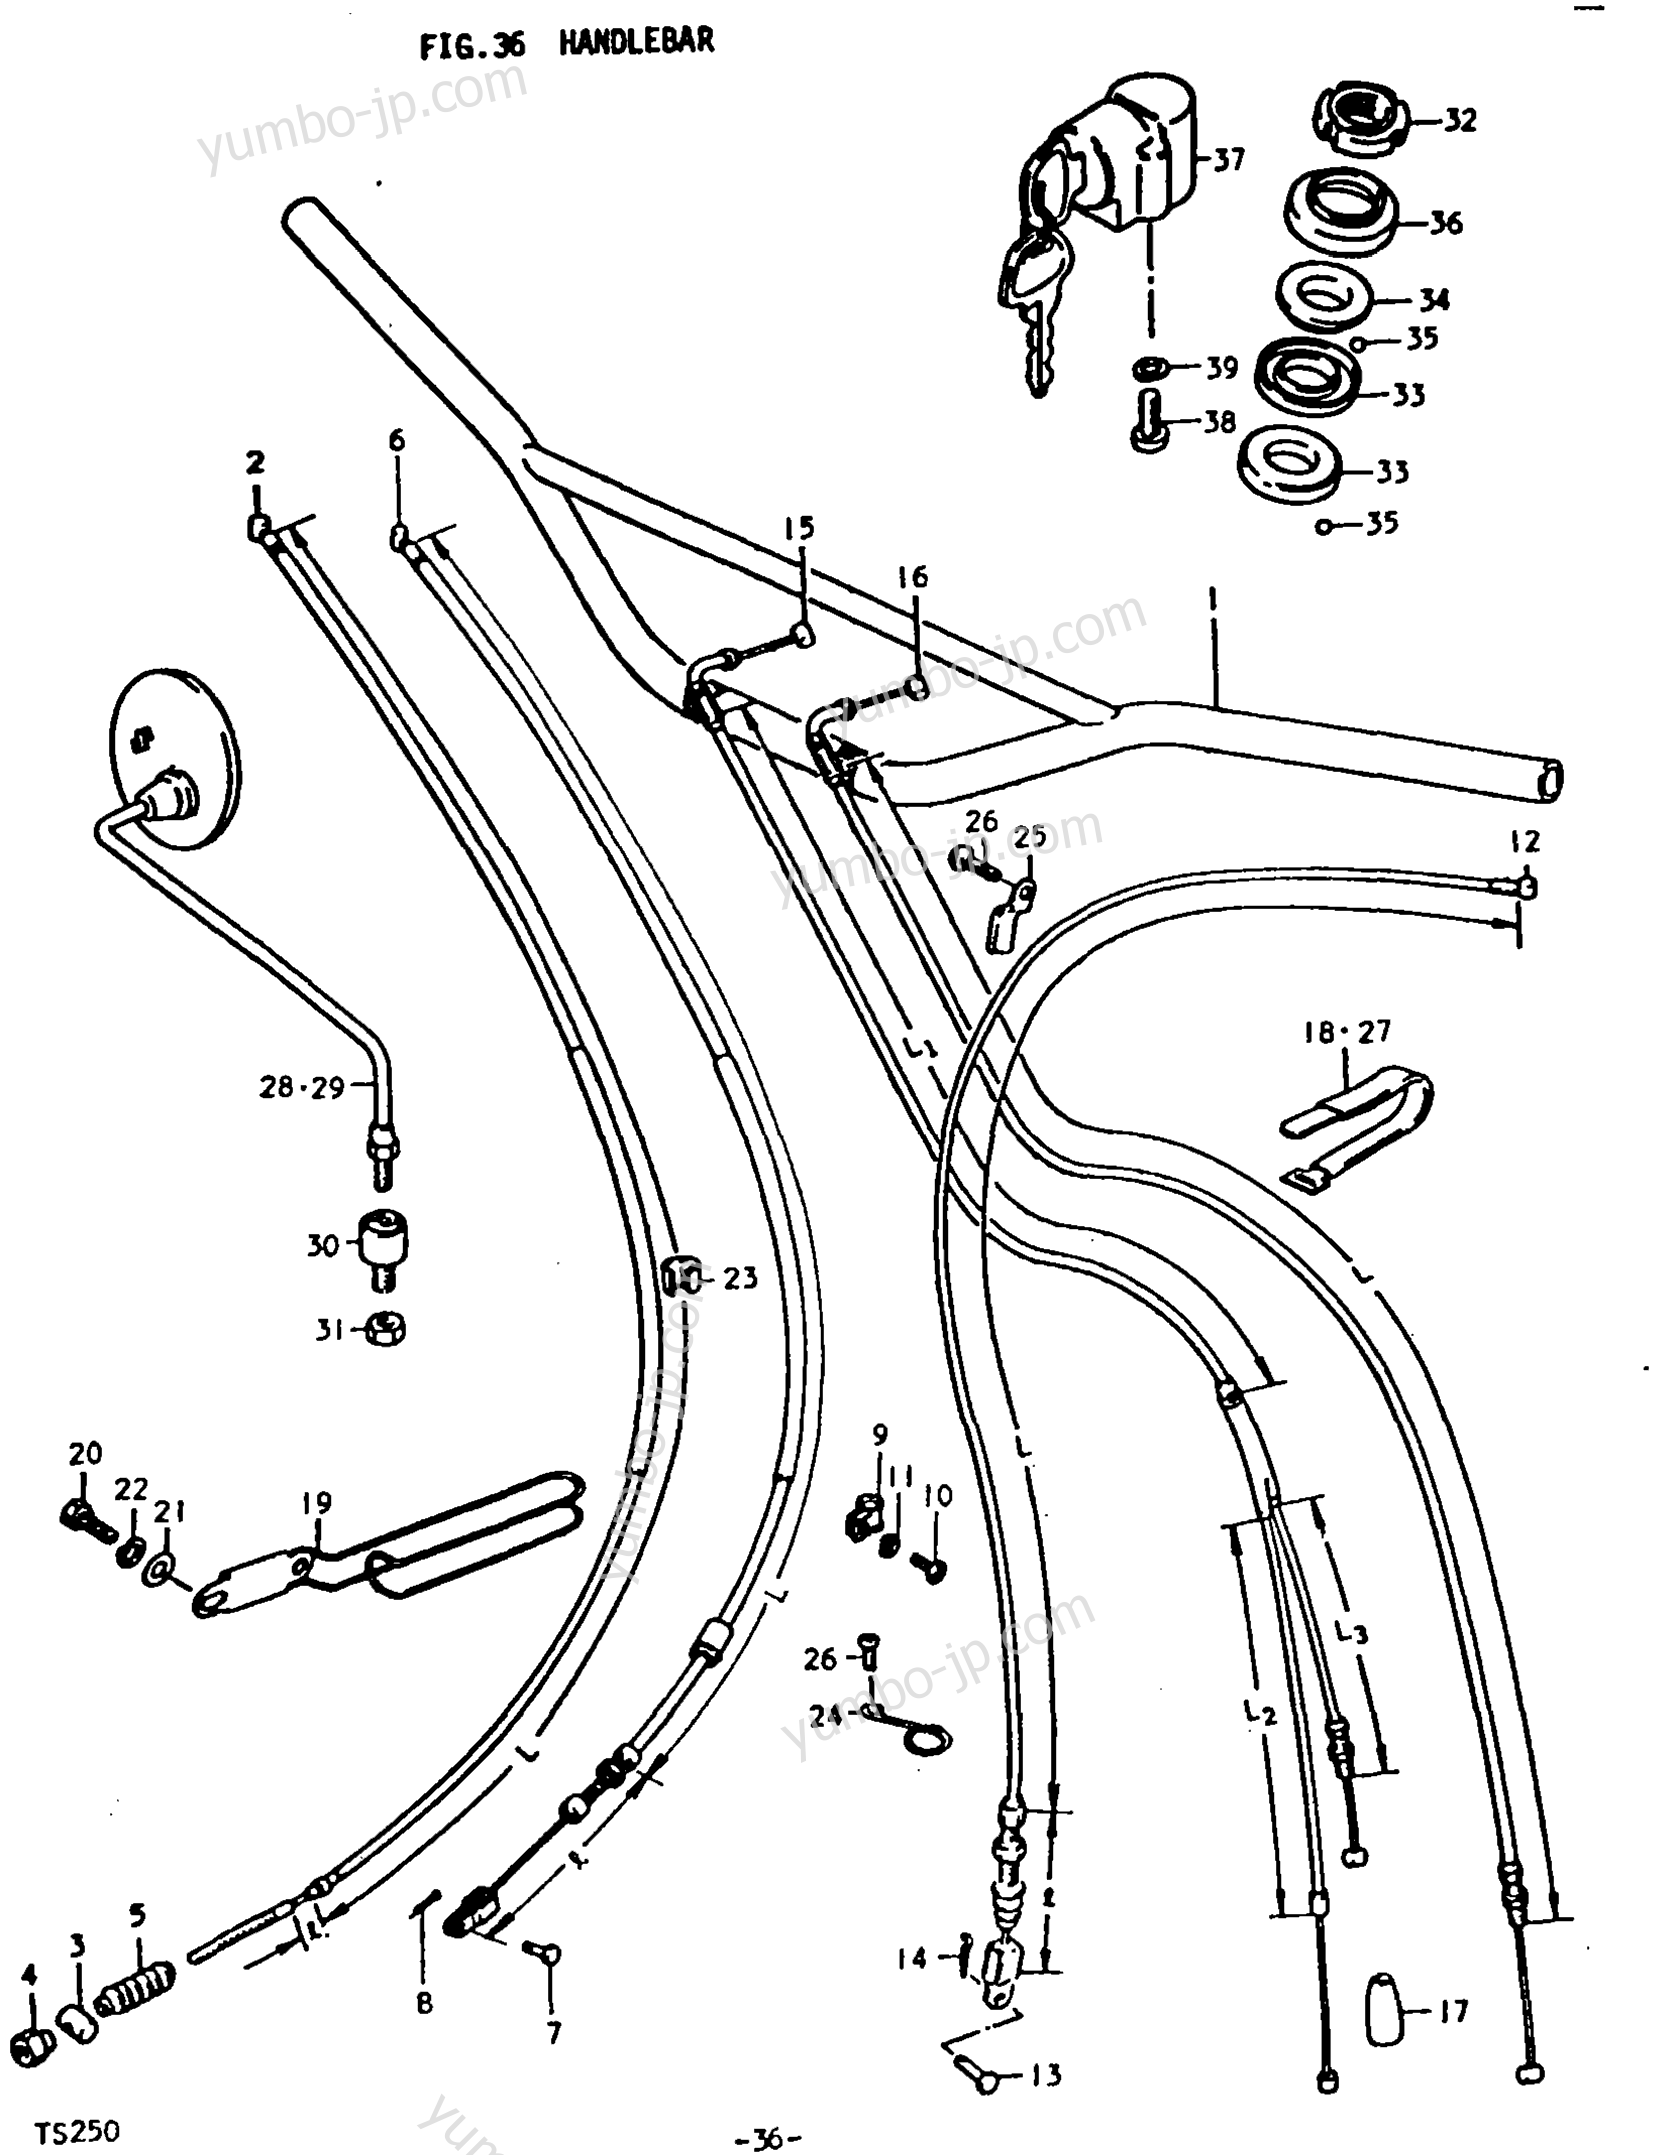 Румпель (рукоятка управления) для мотоциклов SUZUKI TS250 1978 г.